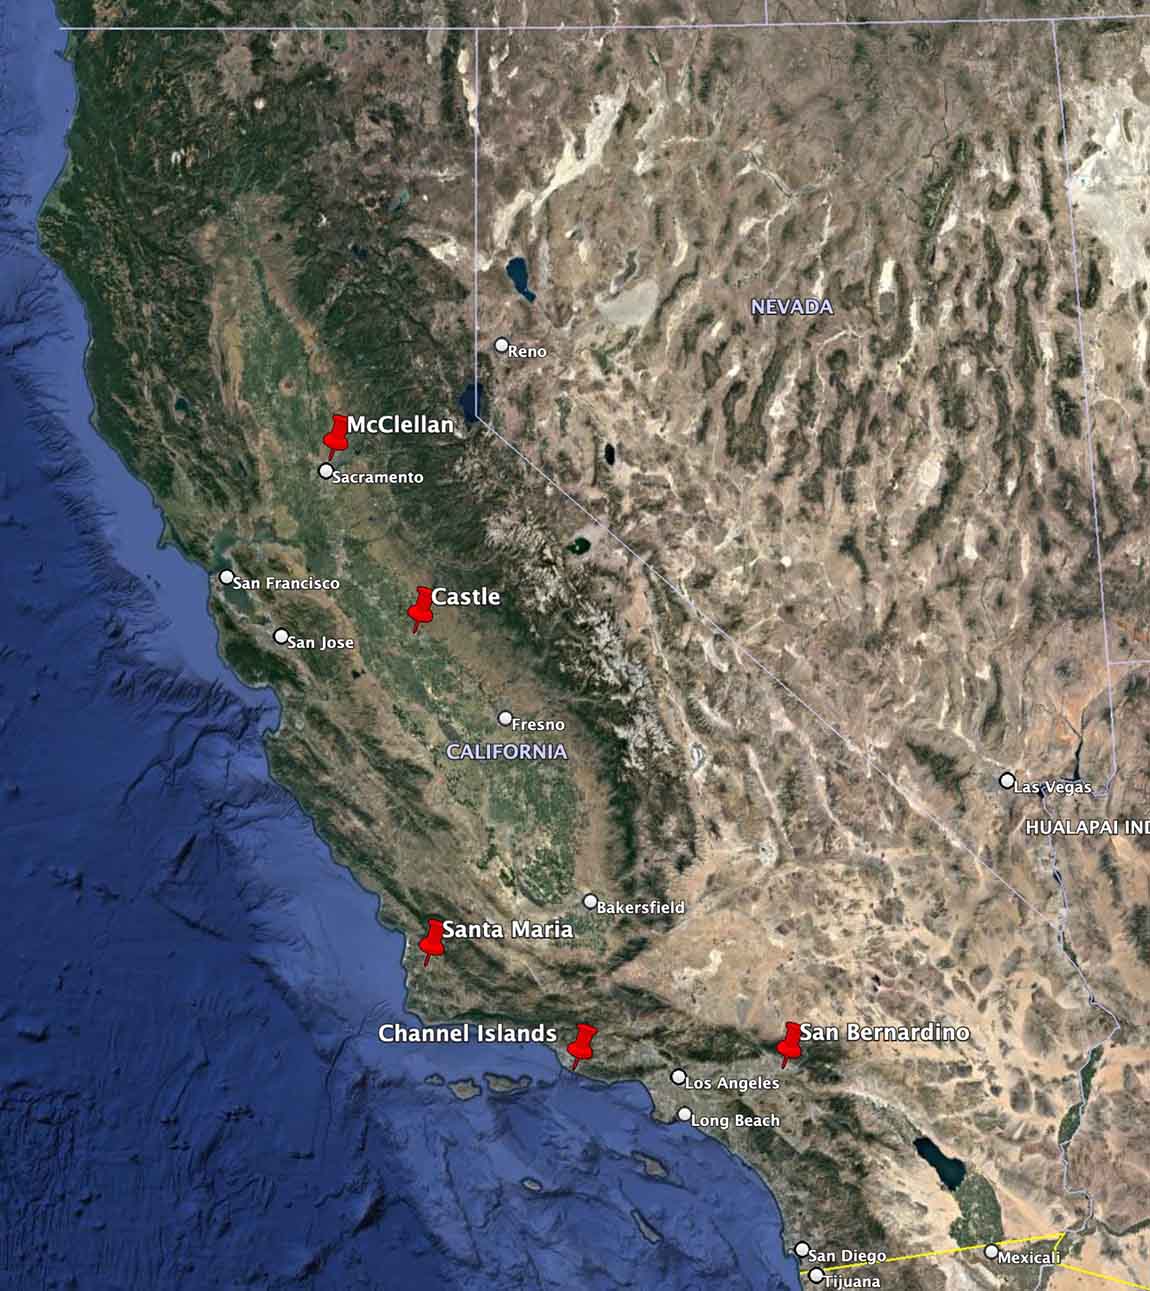 VLAT bases in California